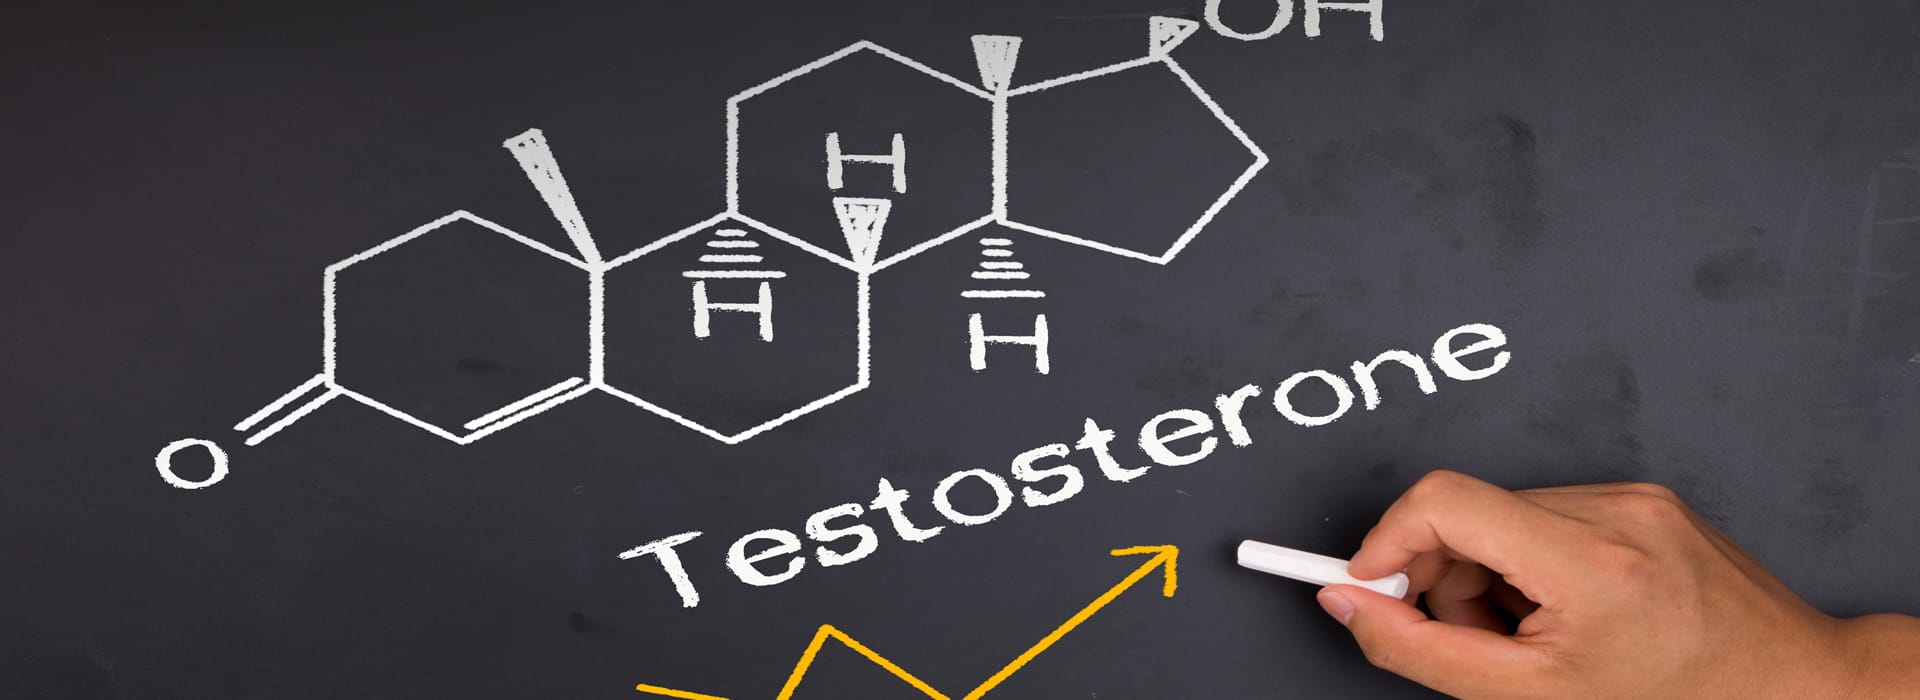 7 modi per aumentare il tuo testosterone naturalmente